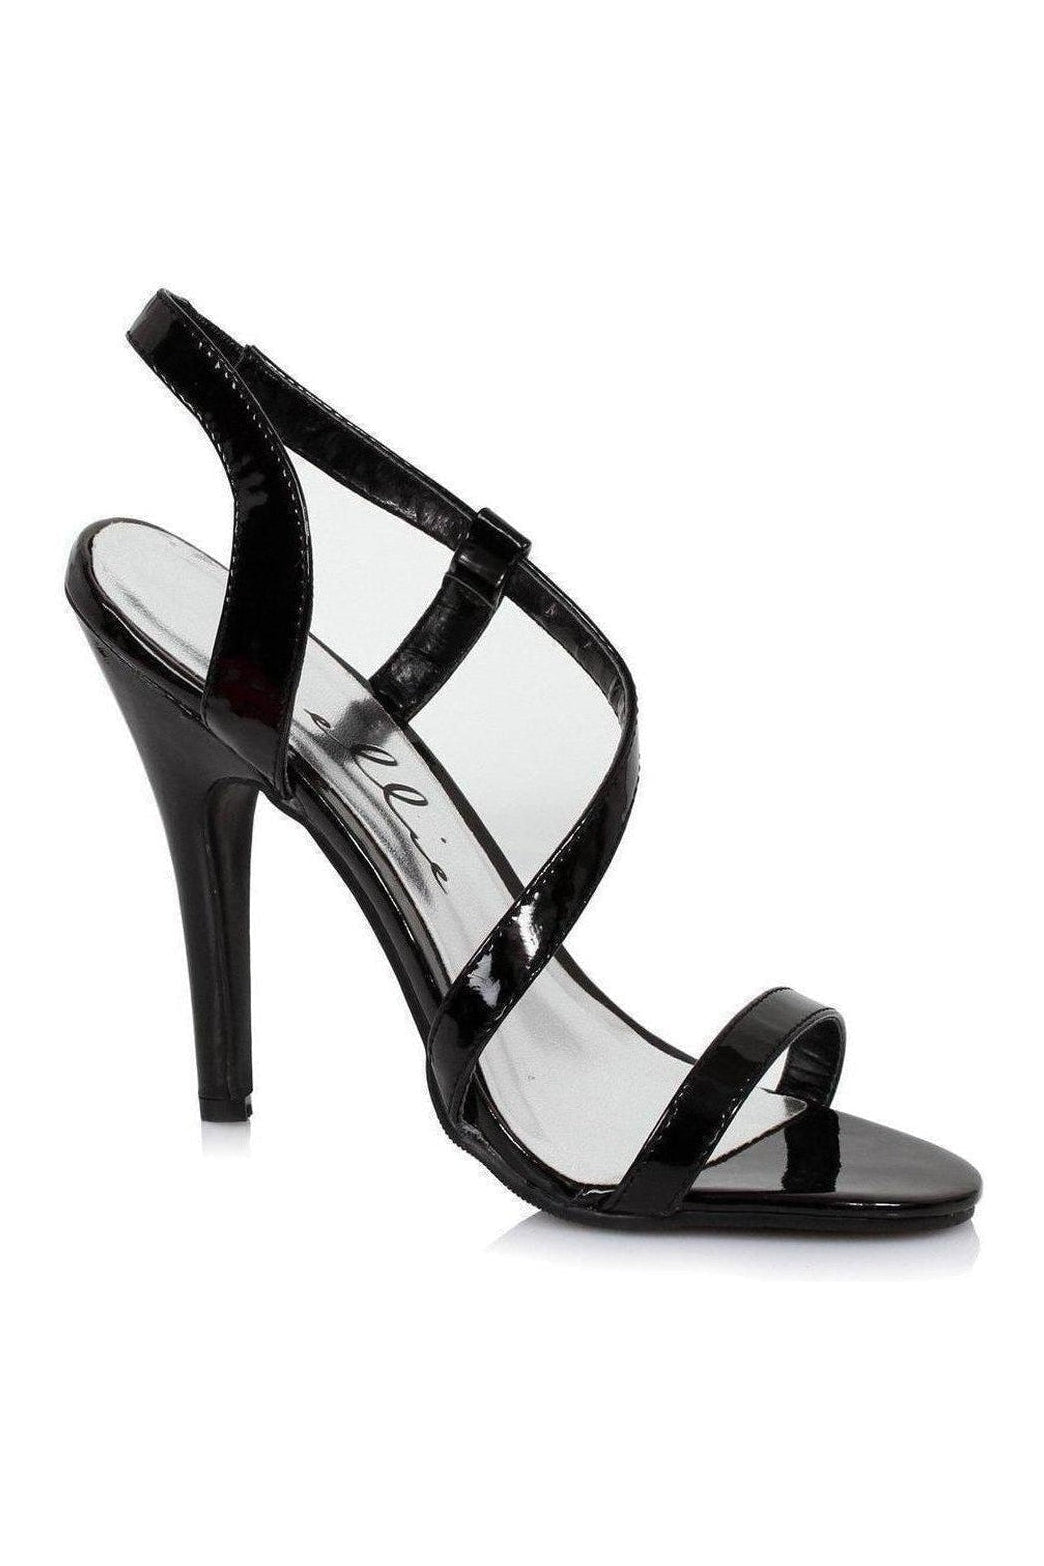 510-DEBBIE Sandal | Black Patent-Ellie Shoes-SEXYSHOES.COM